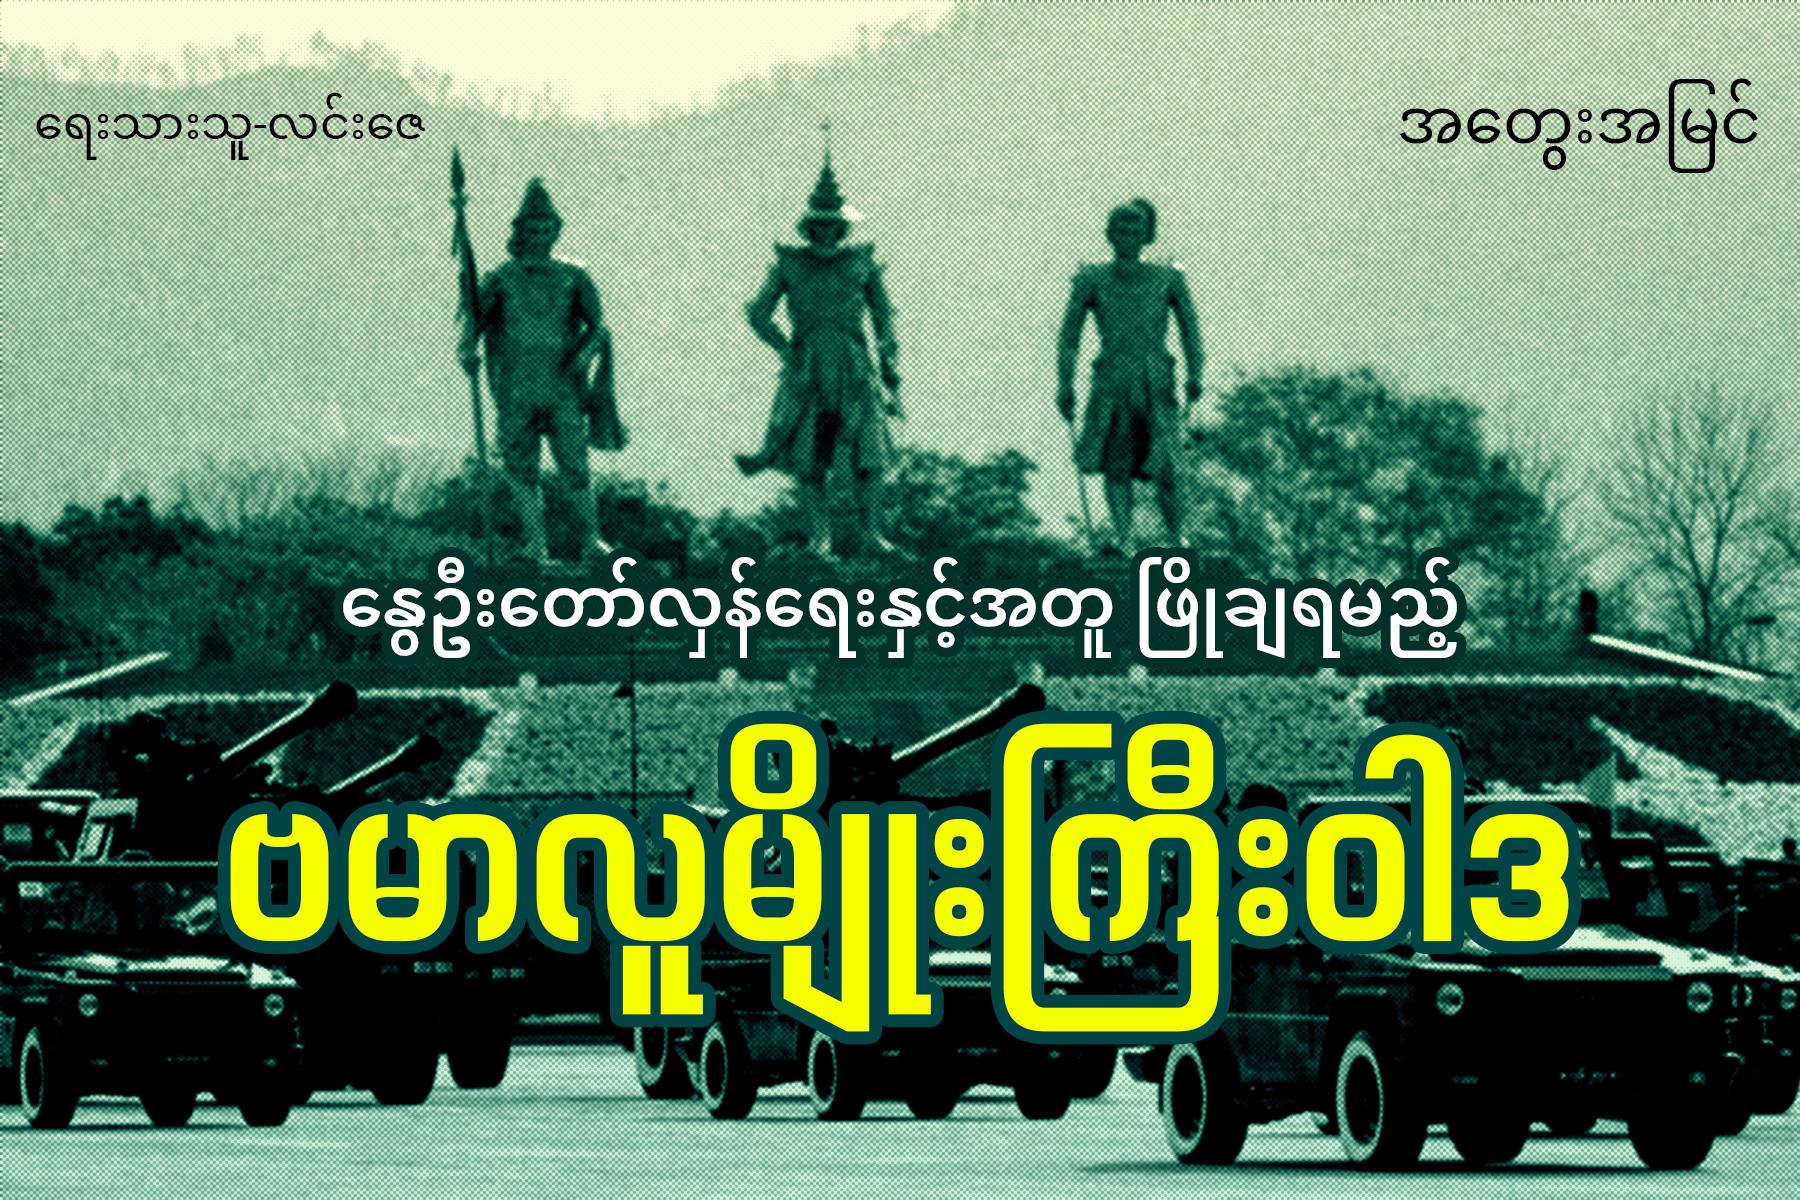 နွေဦးတော်လှန်ရေးနှင့်အတူ ဖြိုချရမည့် ဗမာလူမျိုးကြီးဝါဒ (အတွေးအမြင်)